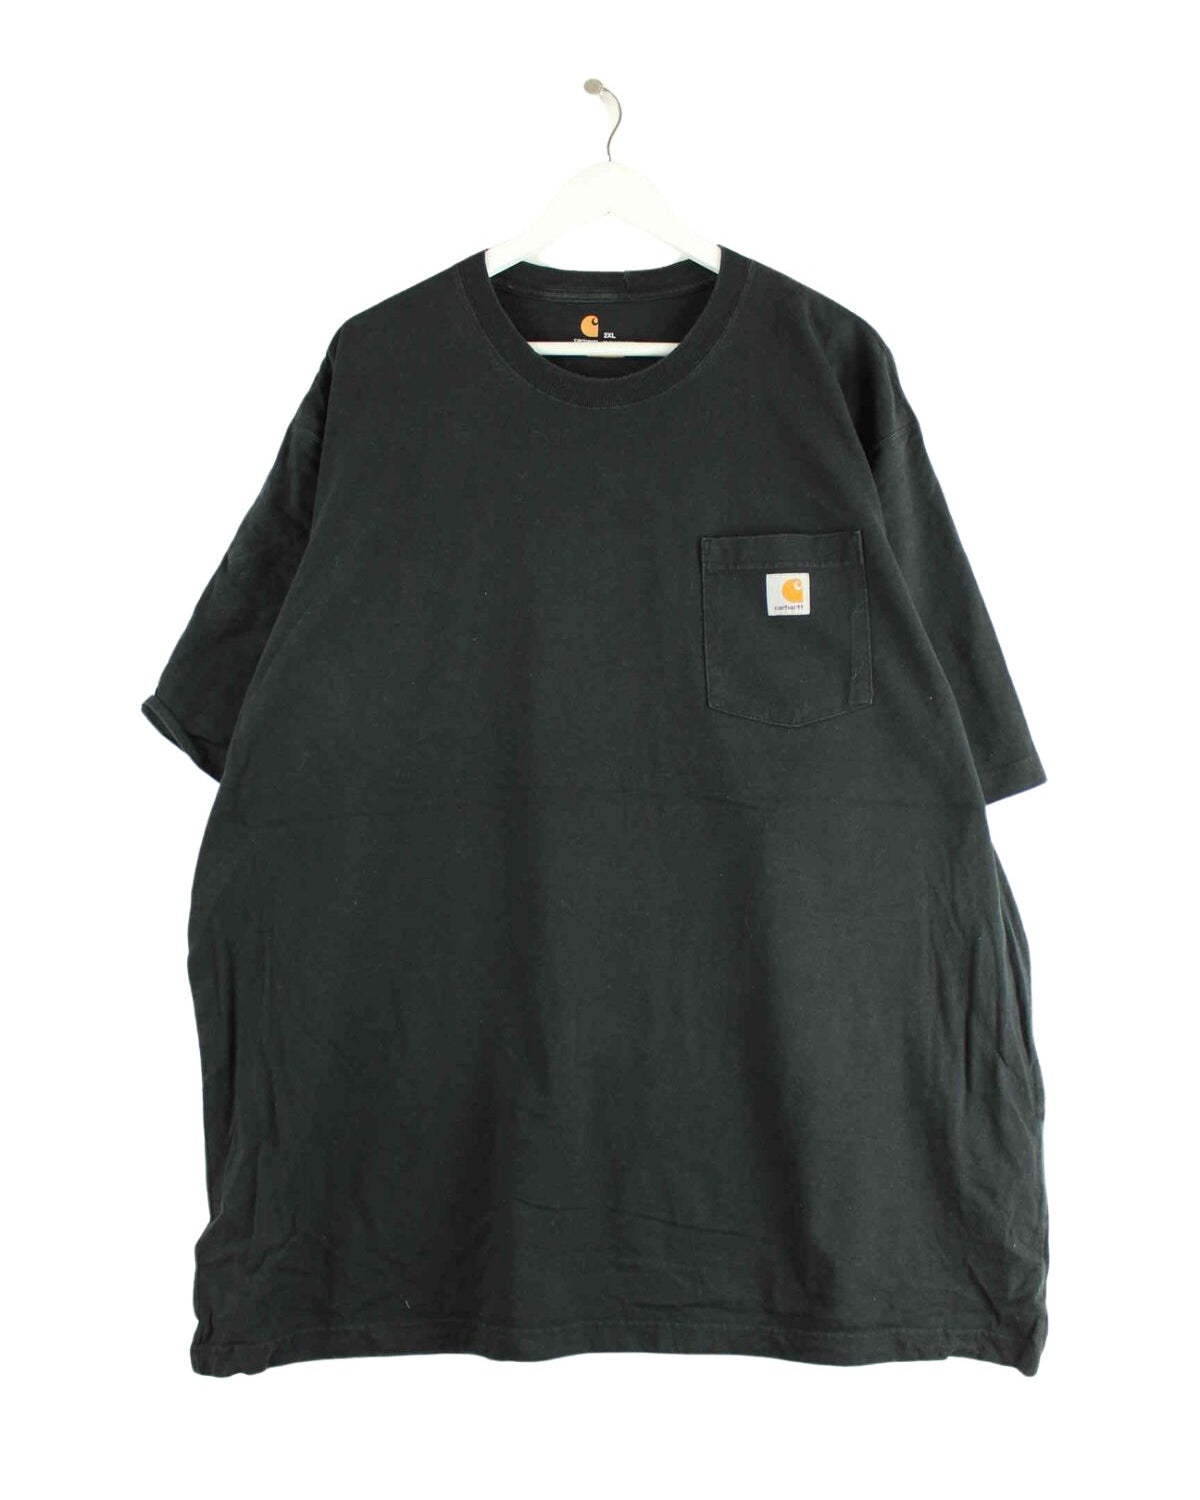 Carhartt Basic T-Shirt Schwarz 3XL (front image)